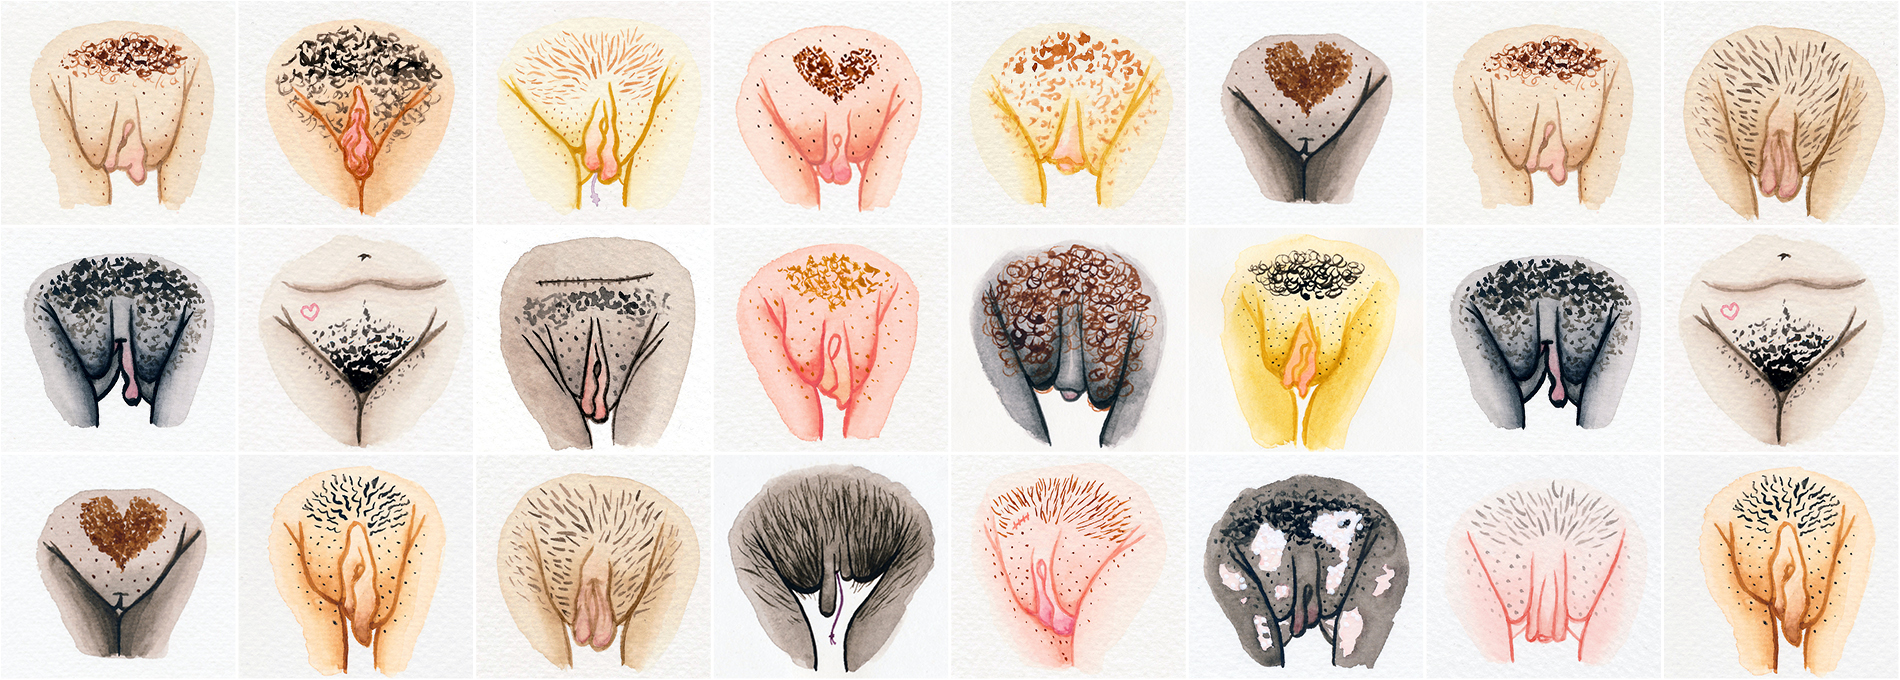 A maravilhosa diversidade de nossas vulvas